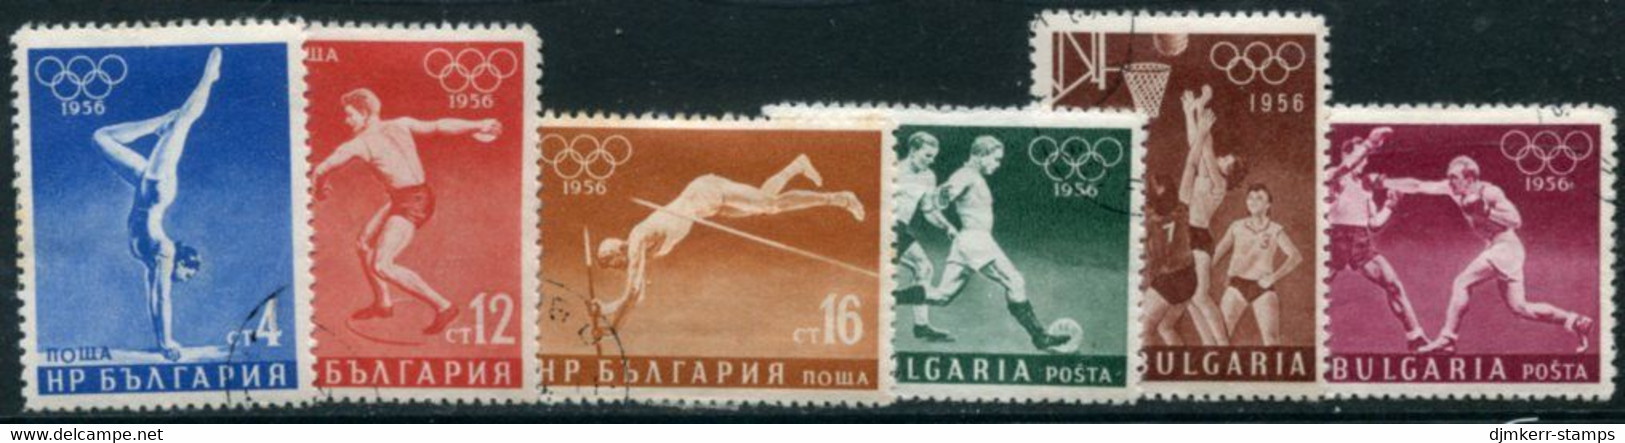 BULGARIA 1956 Olympic Games Used.  Michel 996-1001 - Gebruikt